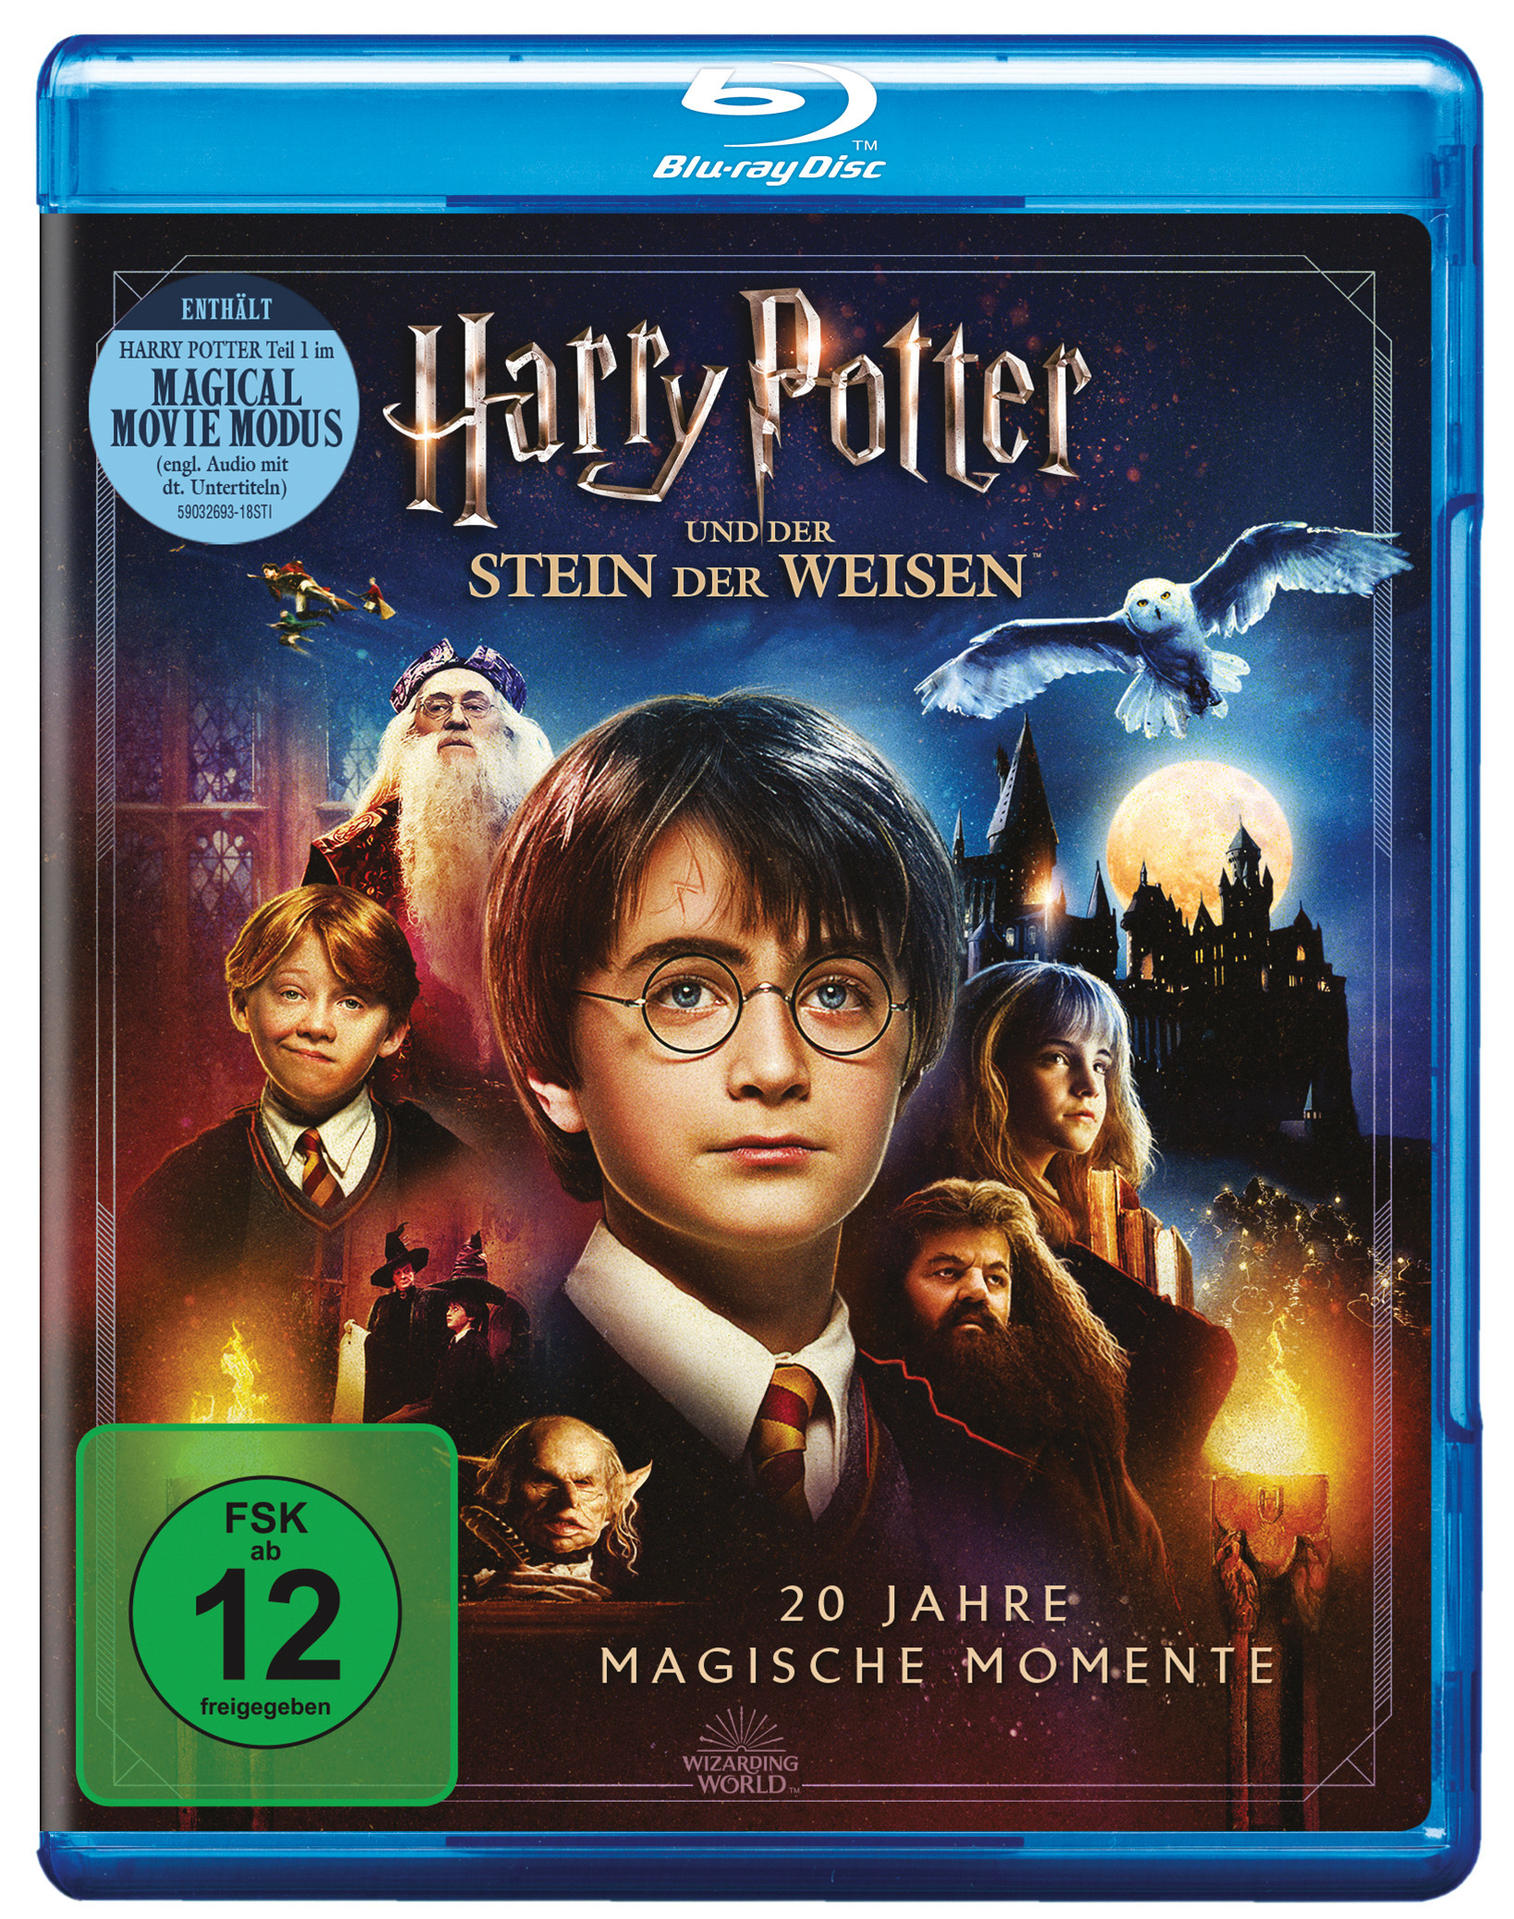 Harry Potter Blu-ray Weisen der der Stein und